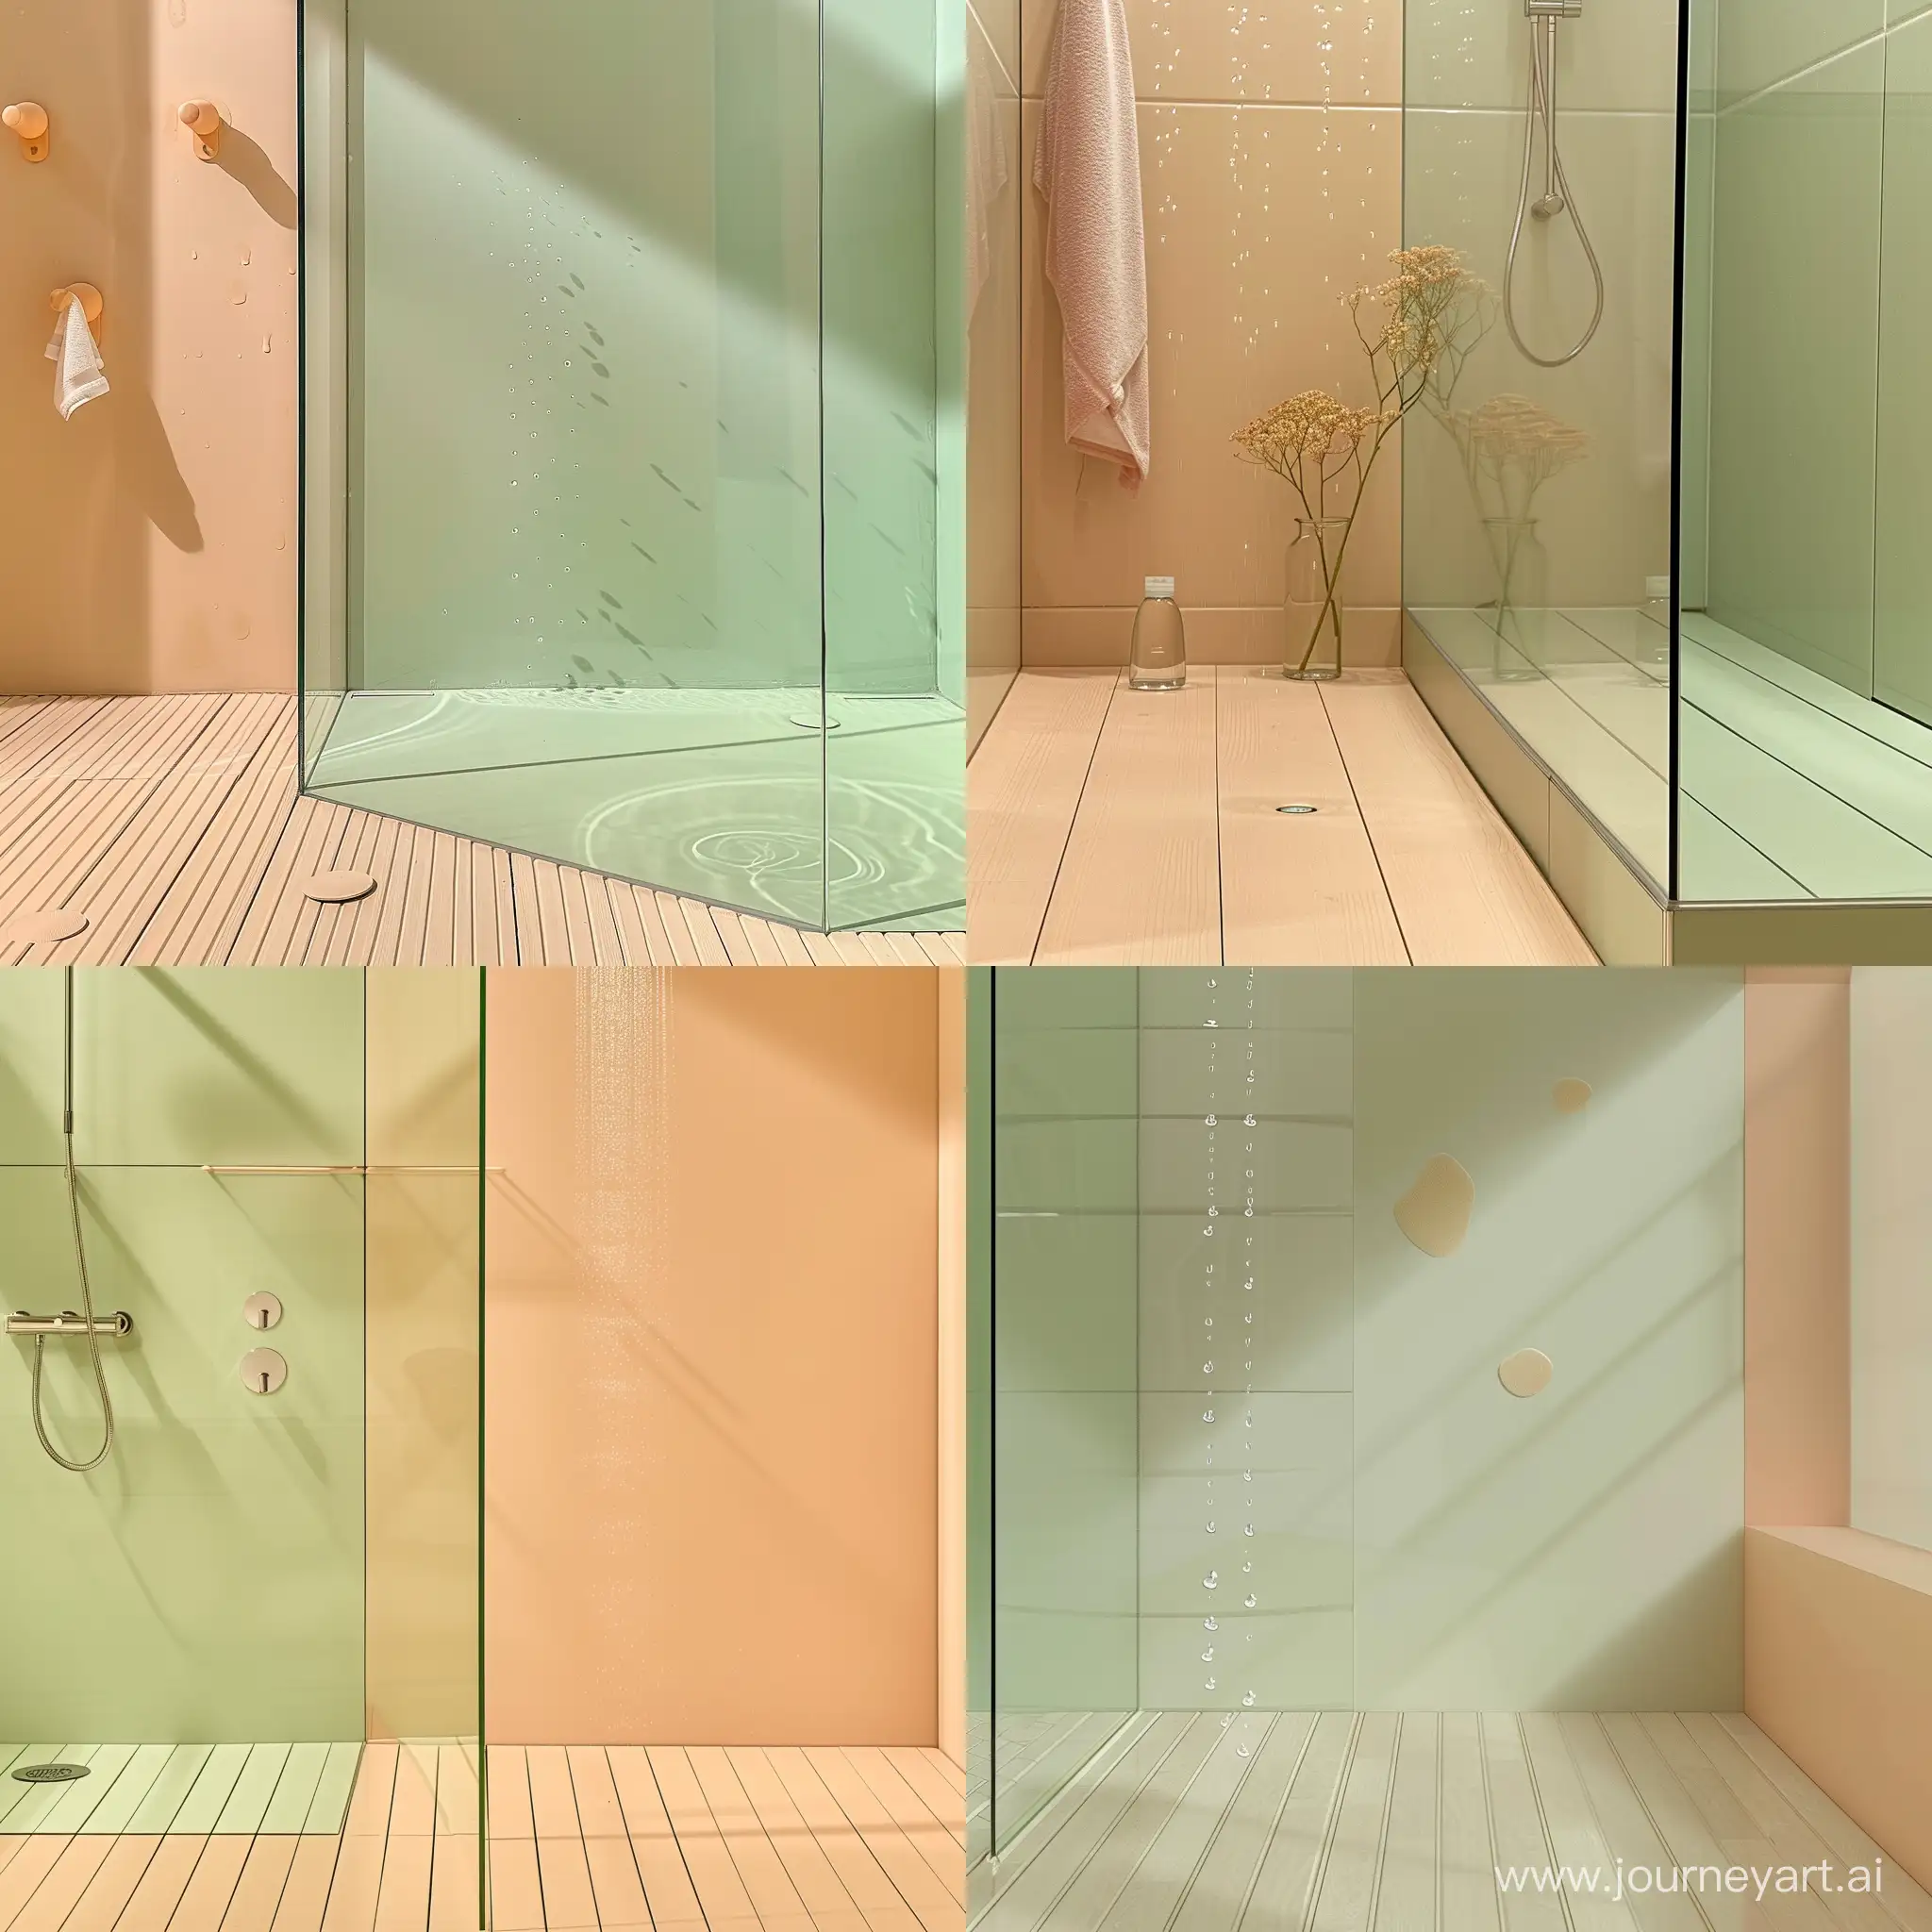 Bagno stile minimal Pavimento parquet chiaro colore pesca beige verde chiaro foto da dentro la doccia poche  gocce di acqua che scendono sul cristallo del box doccia
